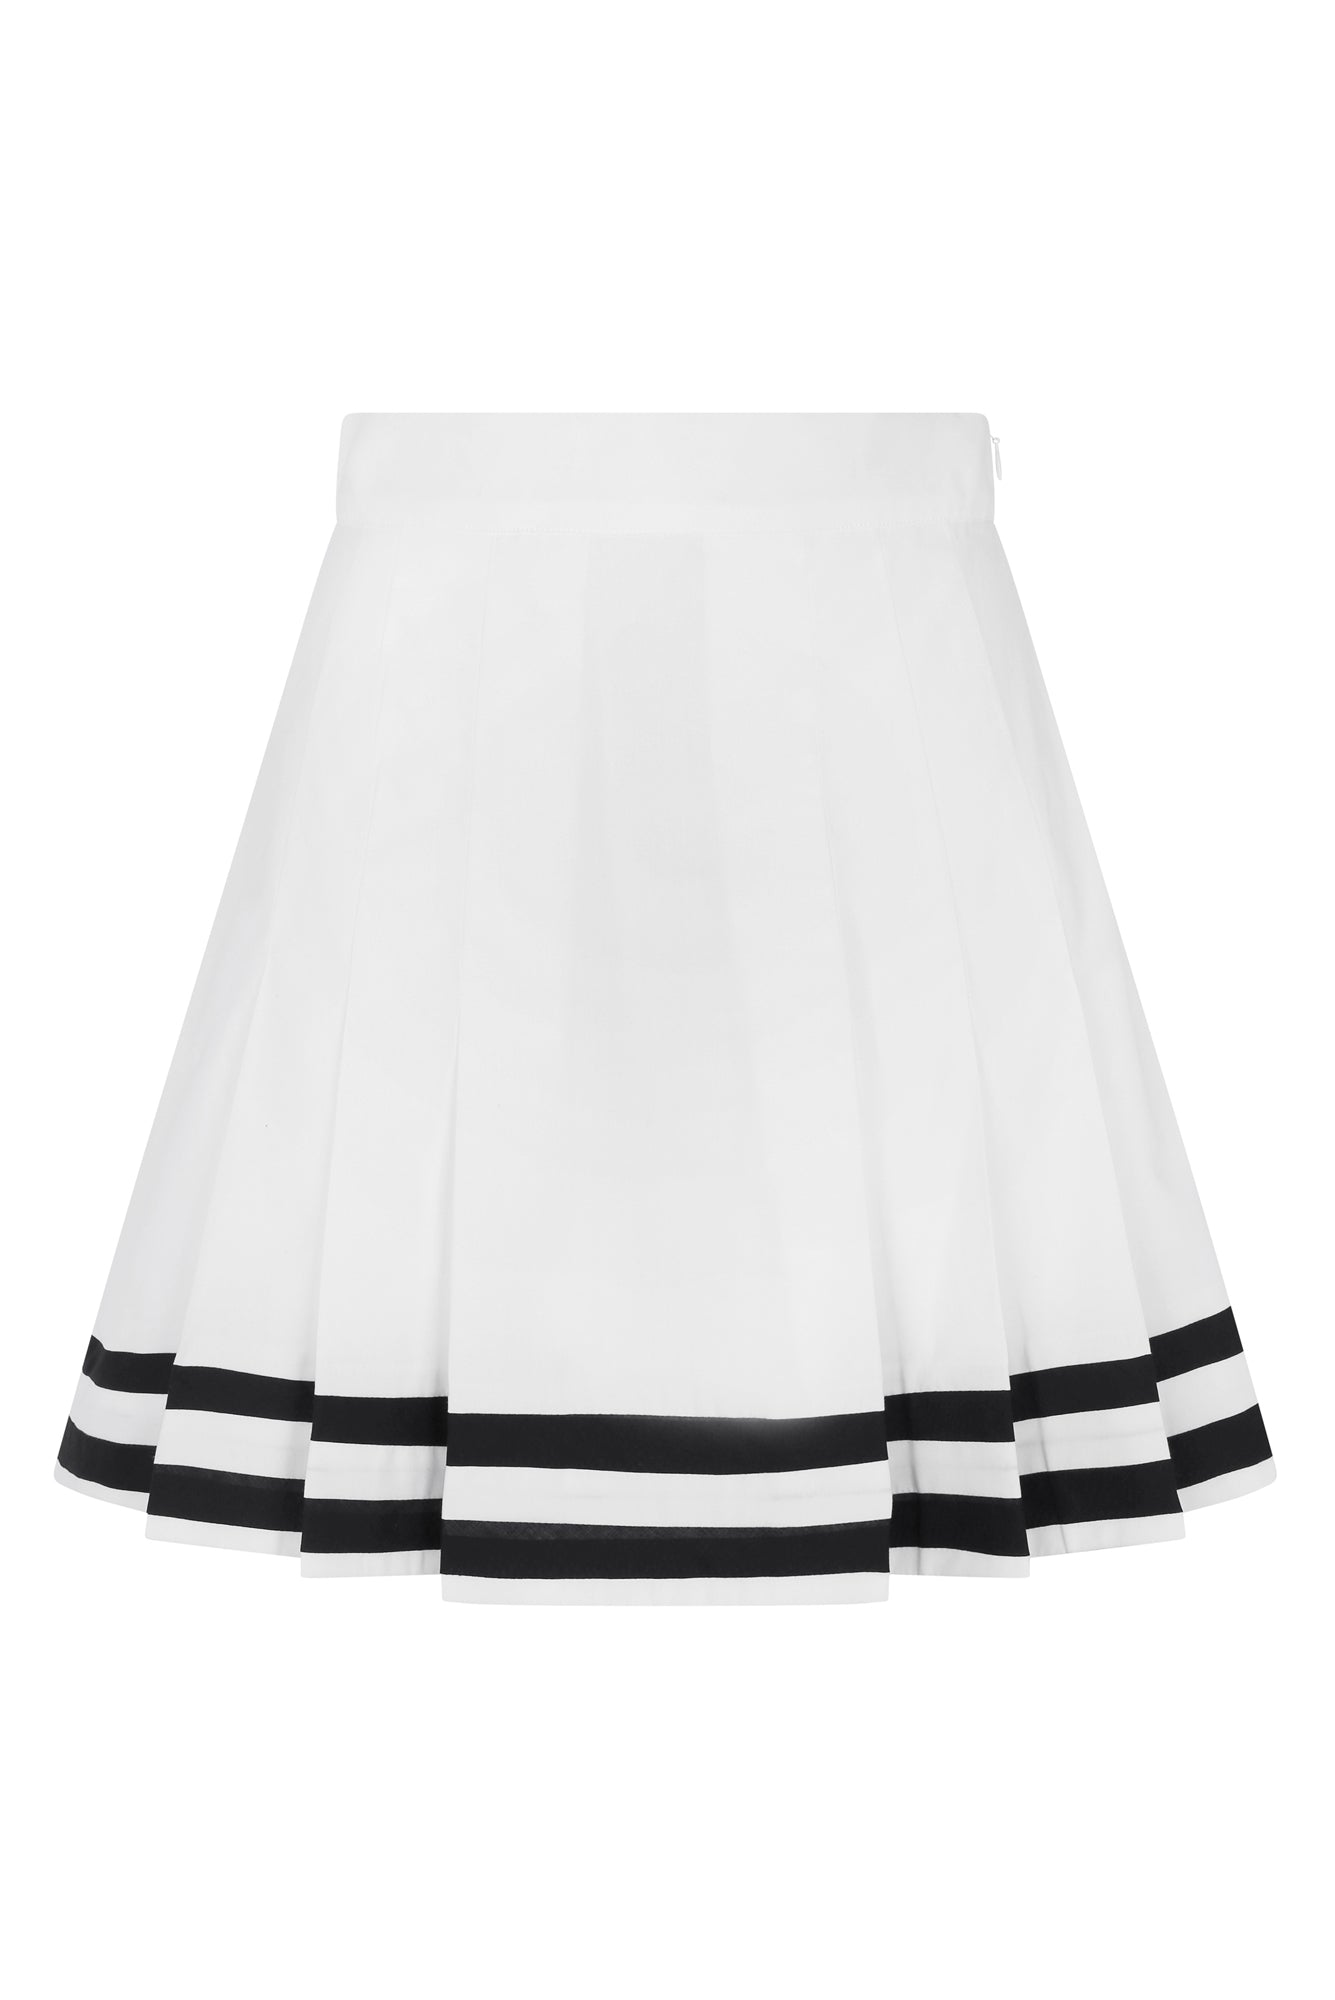 Zinia Skirt in White / Navy